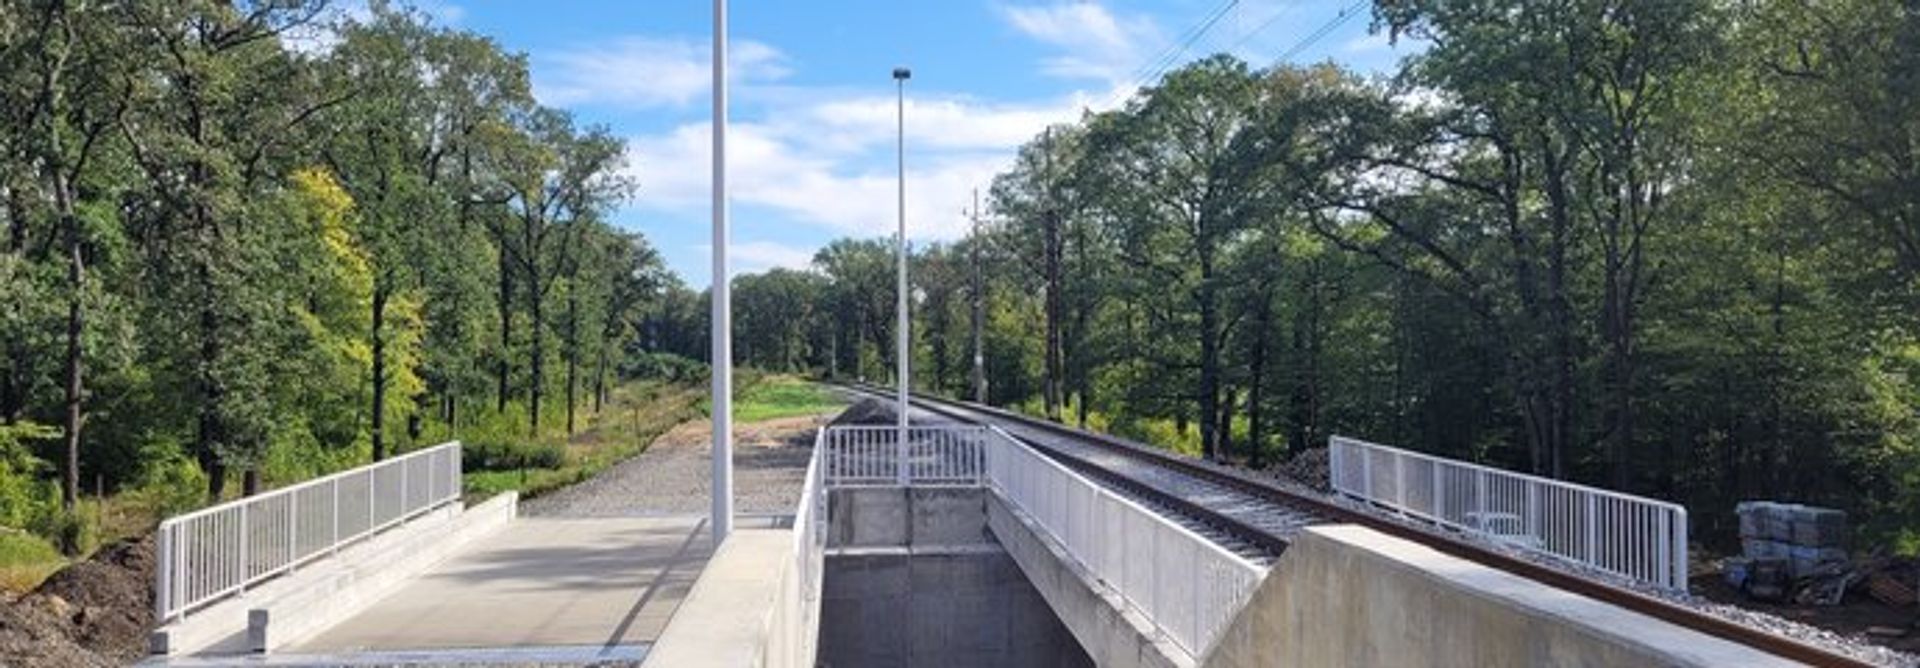 Pociągiem z Wrocławia przez Siechnice do Jelcza i Opola po nowych mostach i wiaduktach